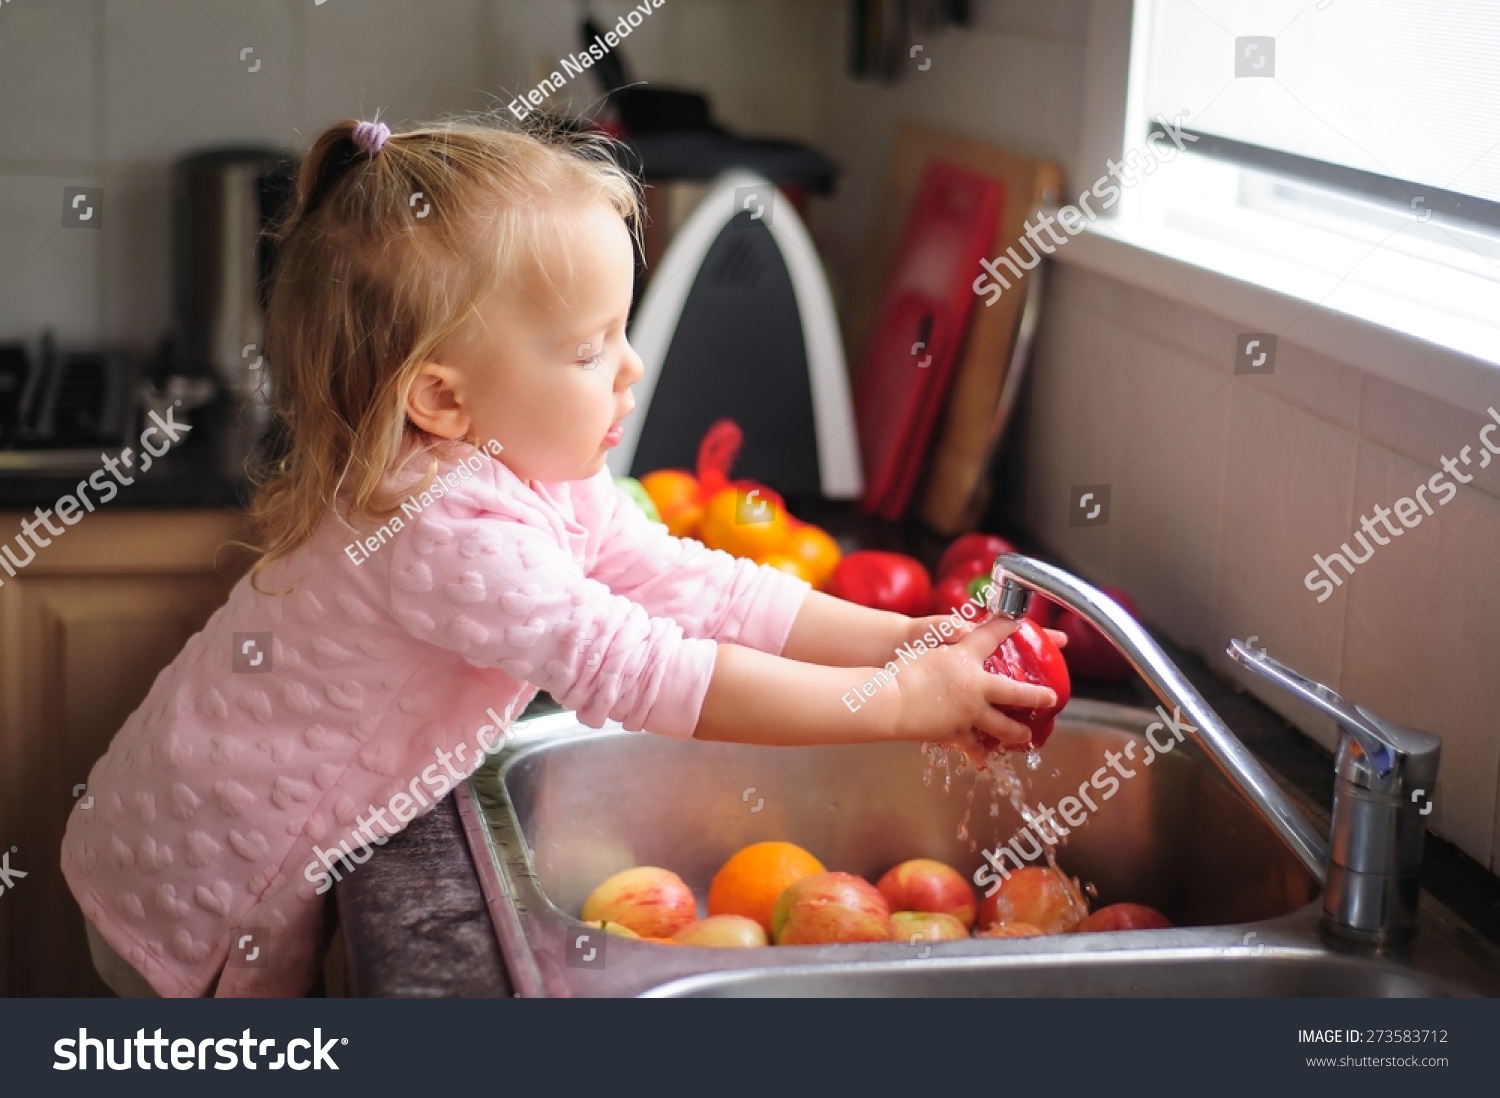 Тщательно. Ребенок моет овощи и фрукты. Ребенок моет фрукты. Мытье овощей детьми. Моем фрукты для детей.